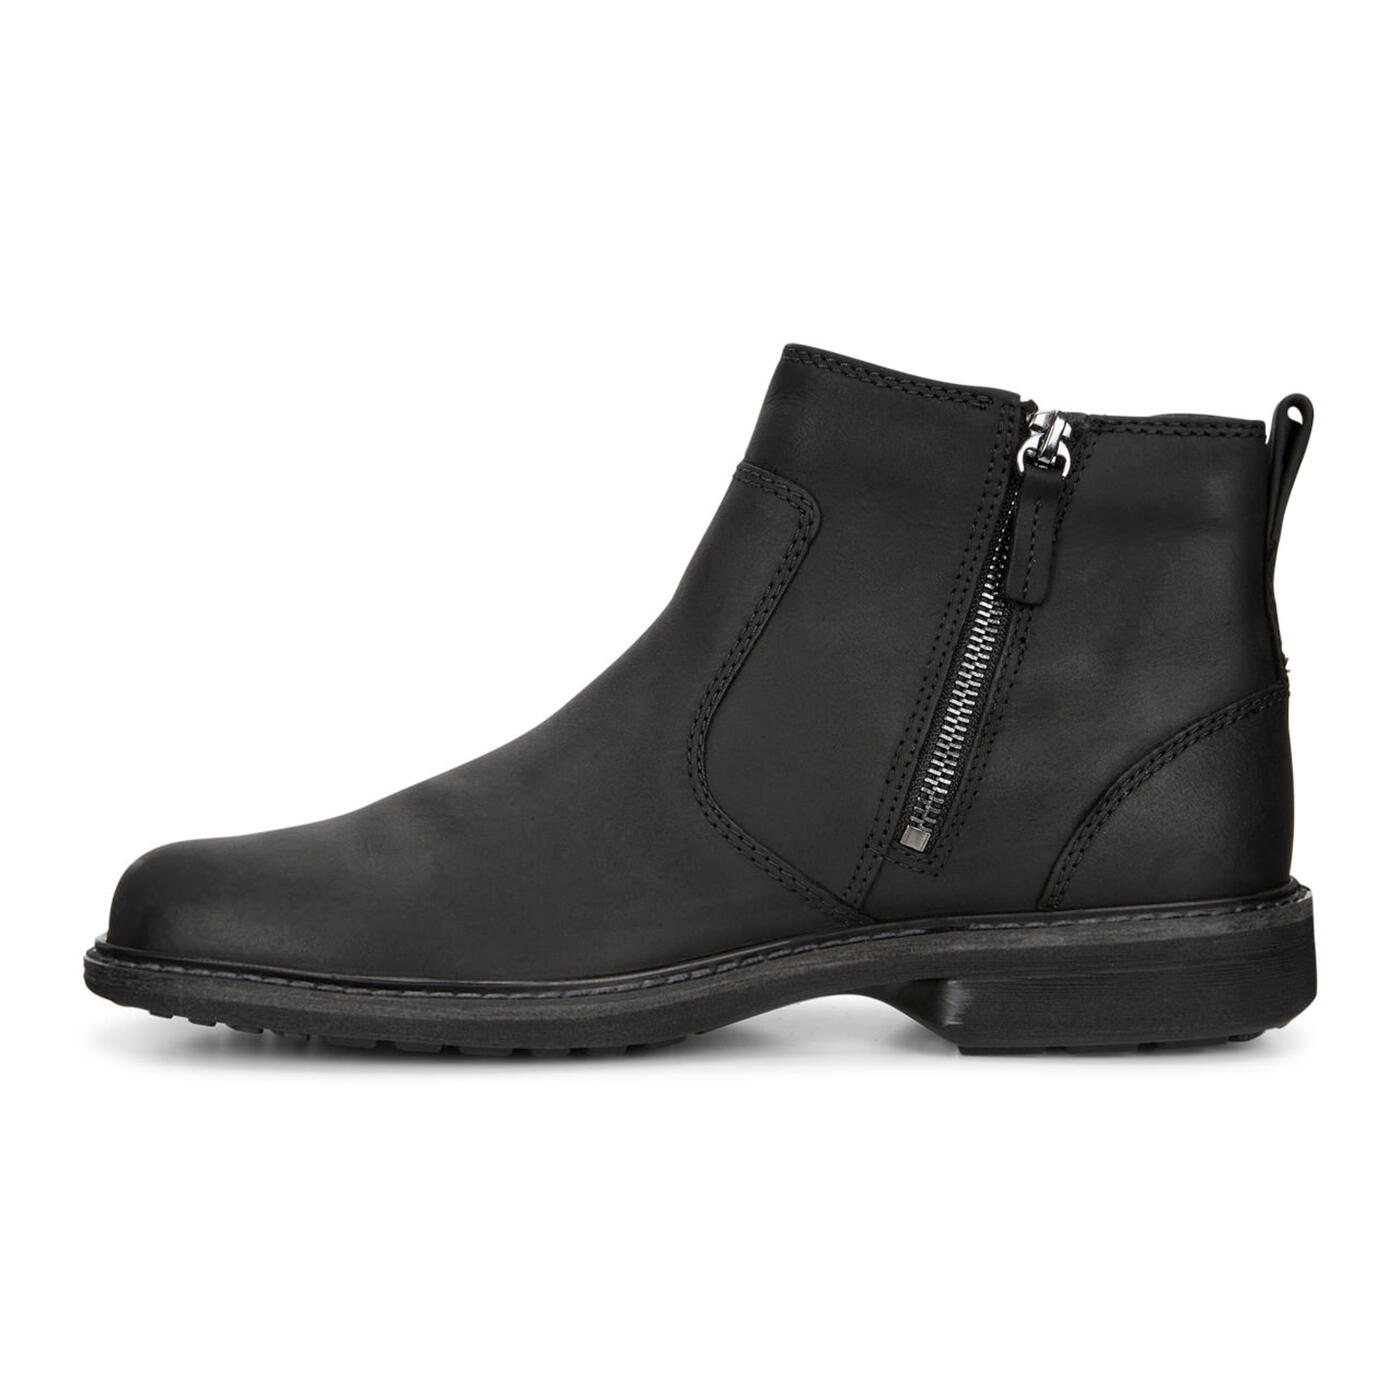 ECCO Turn GTX Chukka Boot | Men's Casual Boots | ECCO® Shoes